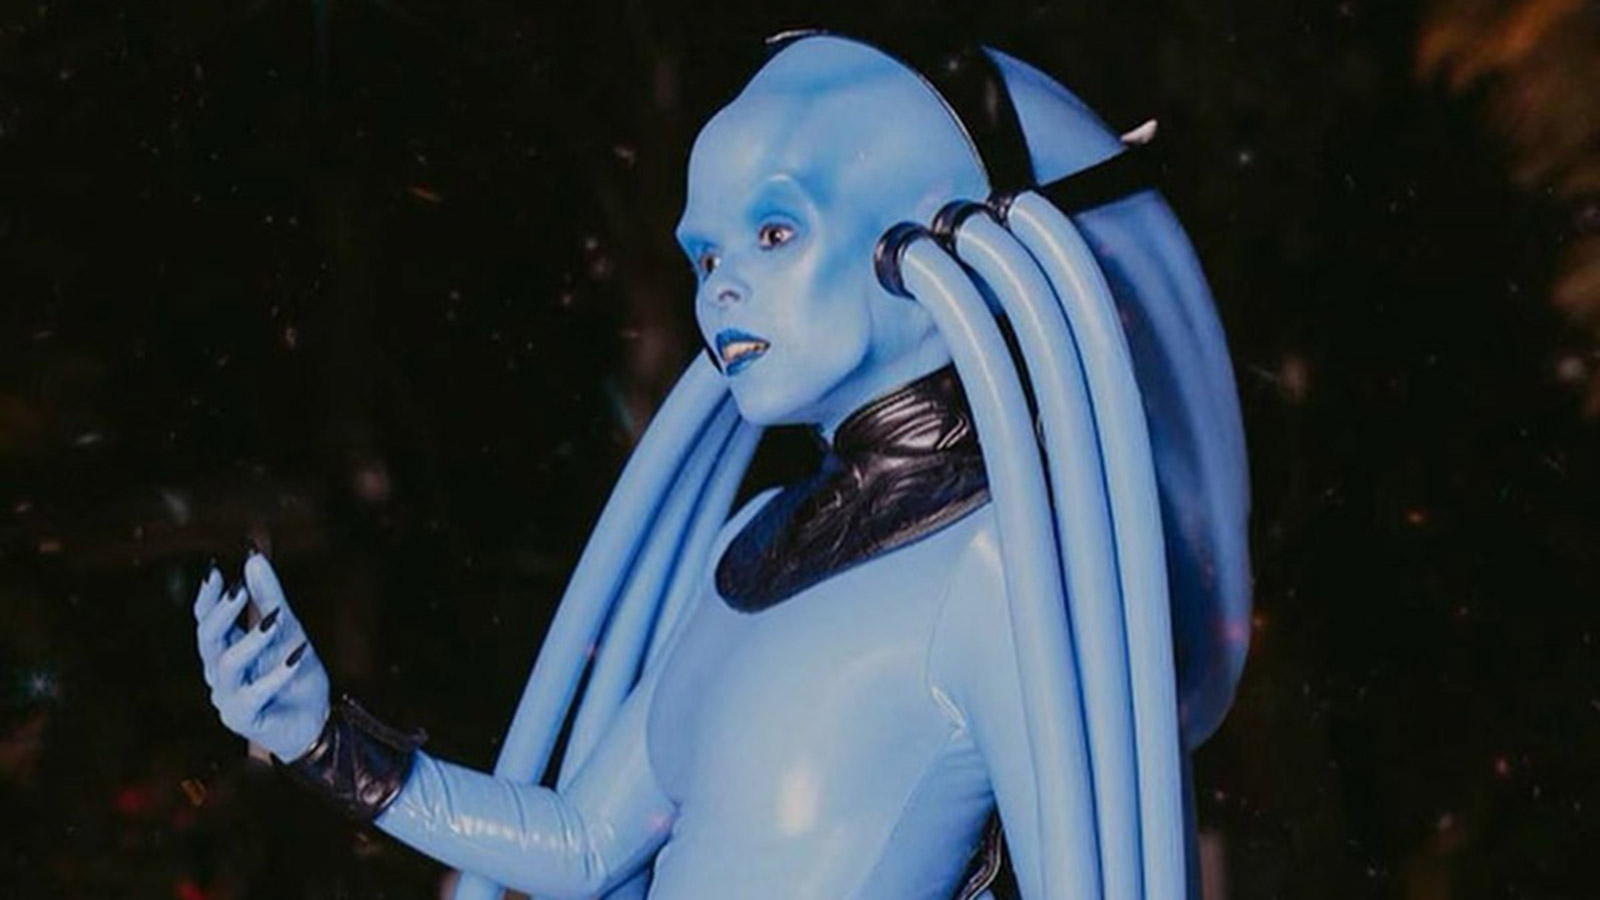 Певица Жанель Монэ в образе инопланетного персонажа из &laquo;Пятого элемента&raquo; &mdash; Дивы Плавалагуны